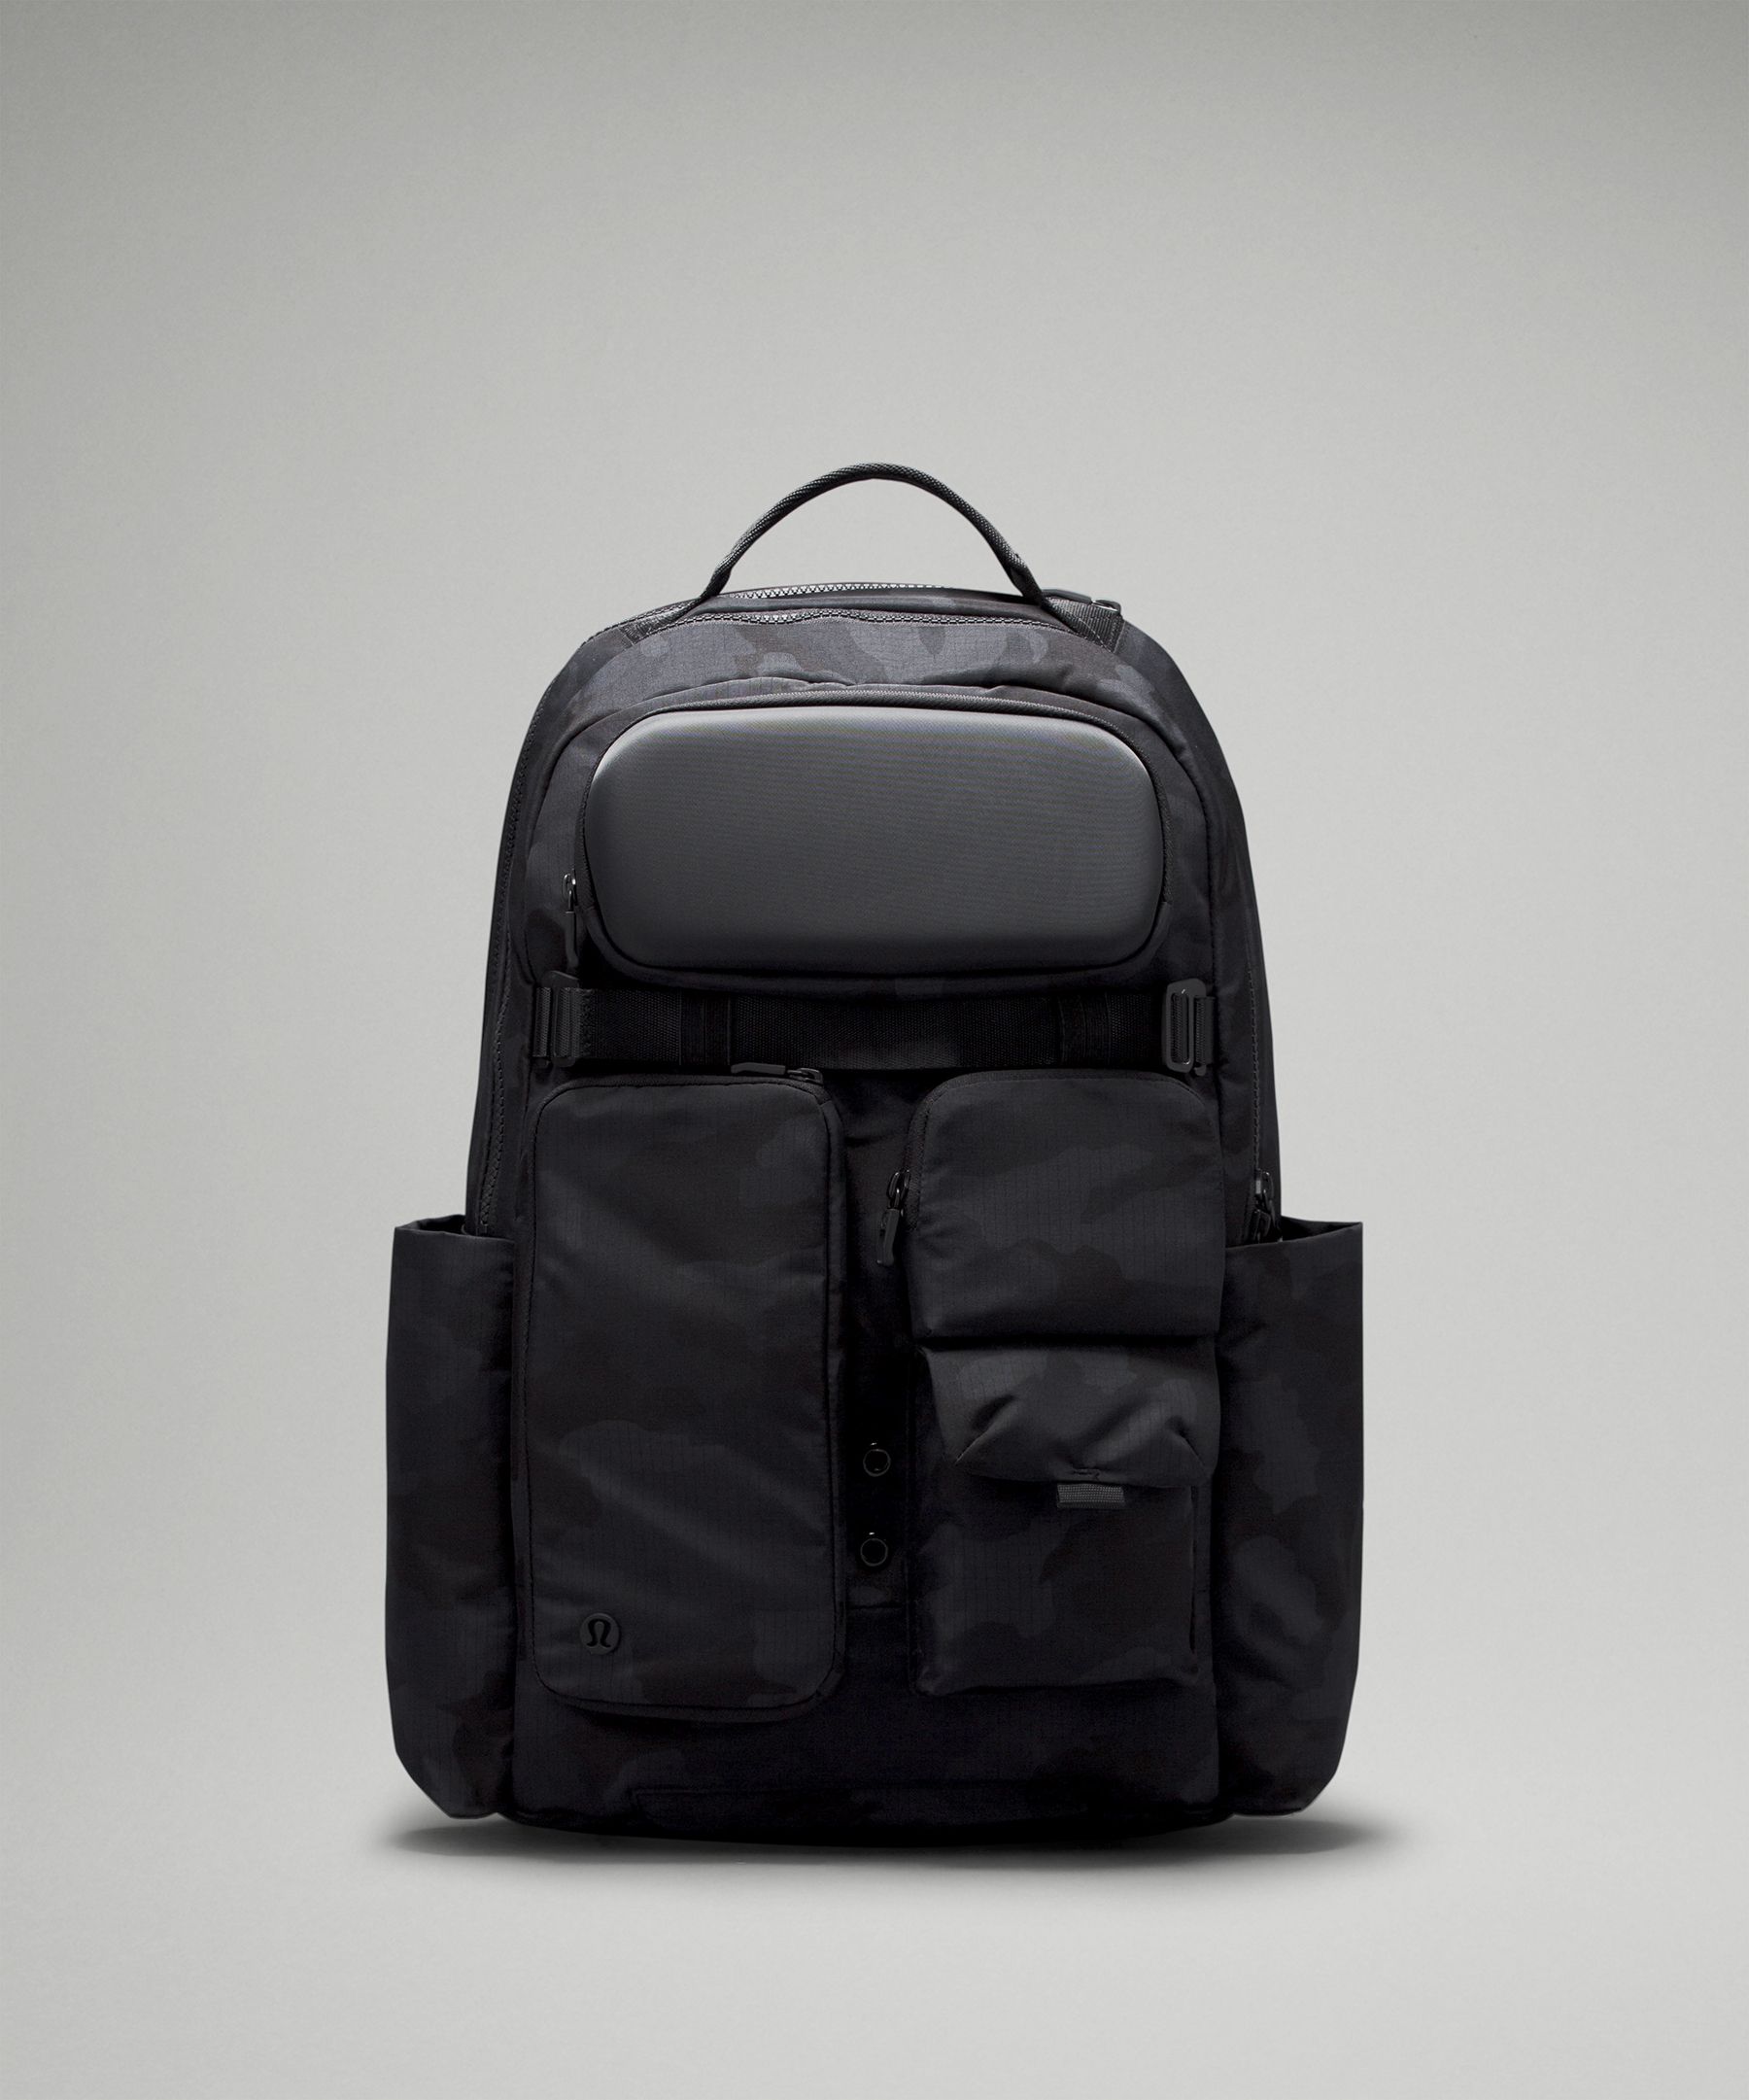 Lululemon Cruiser Backpack 22L - Black